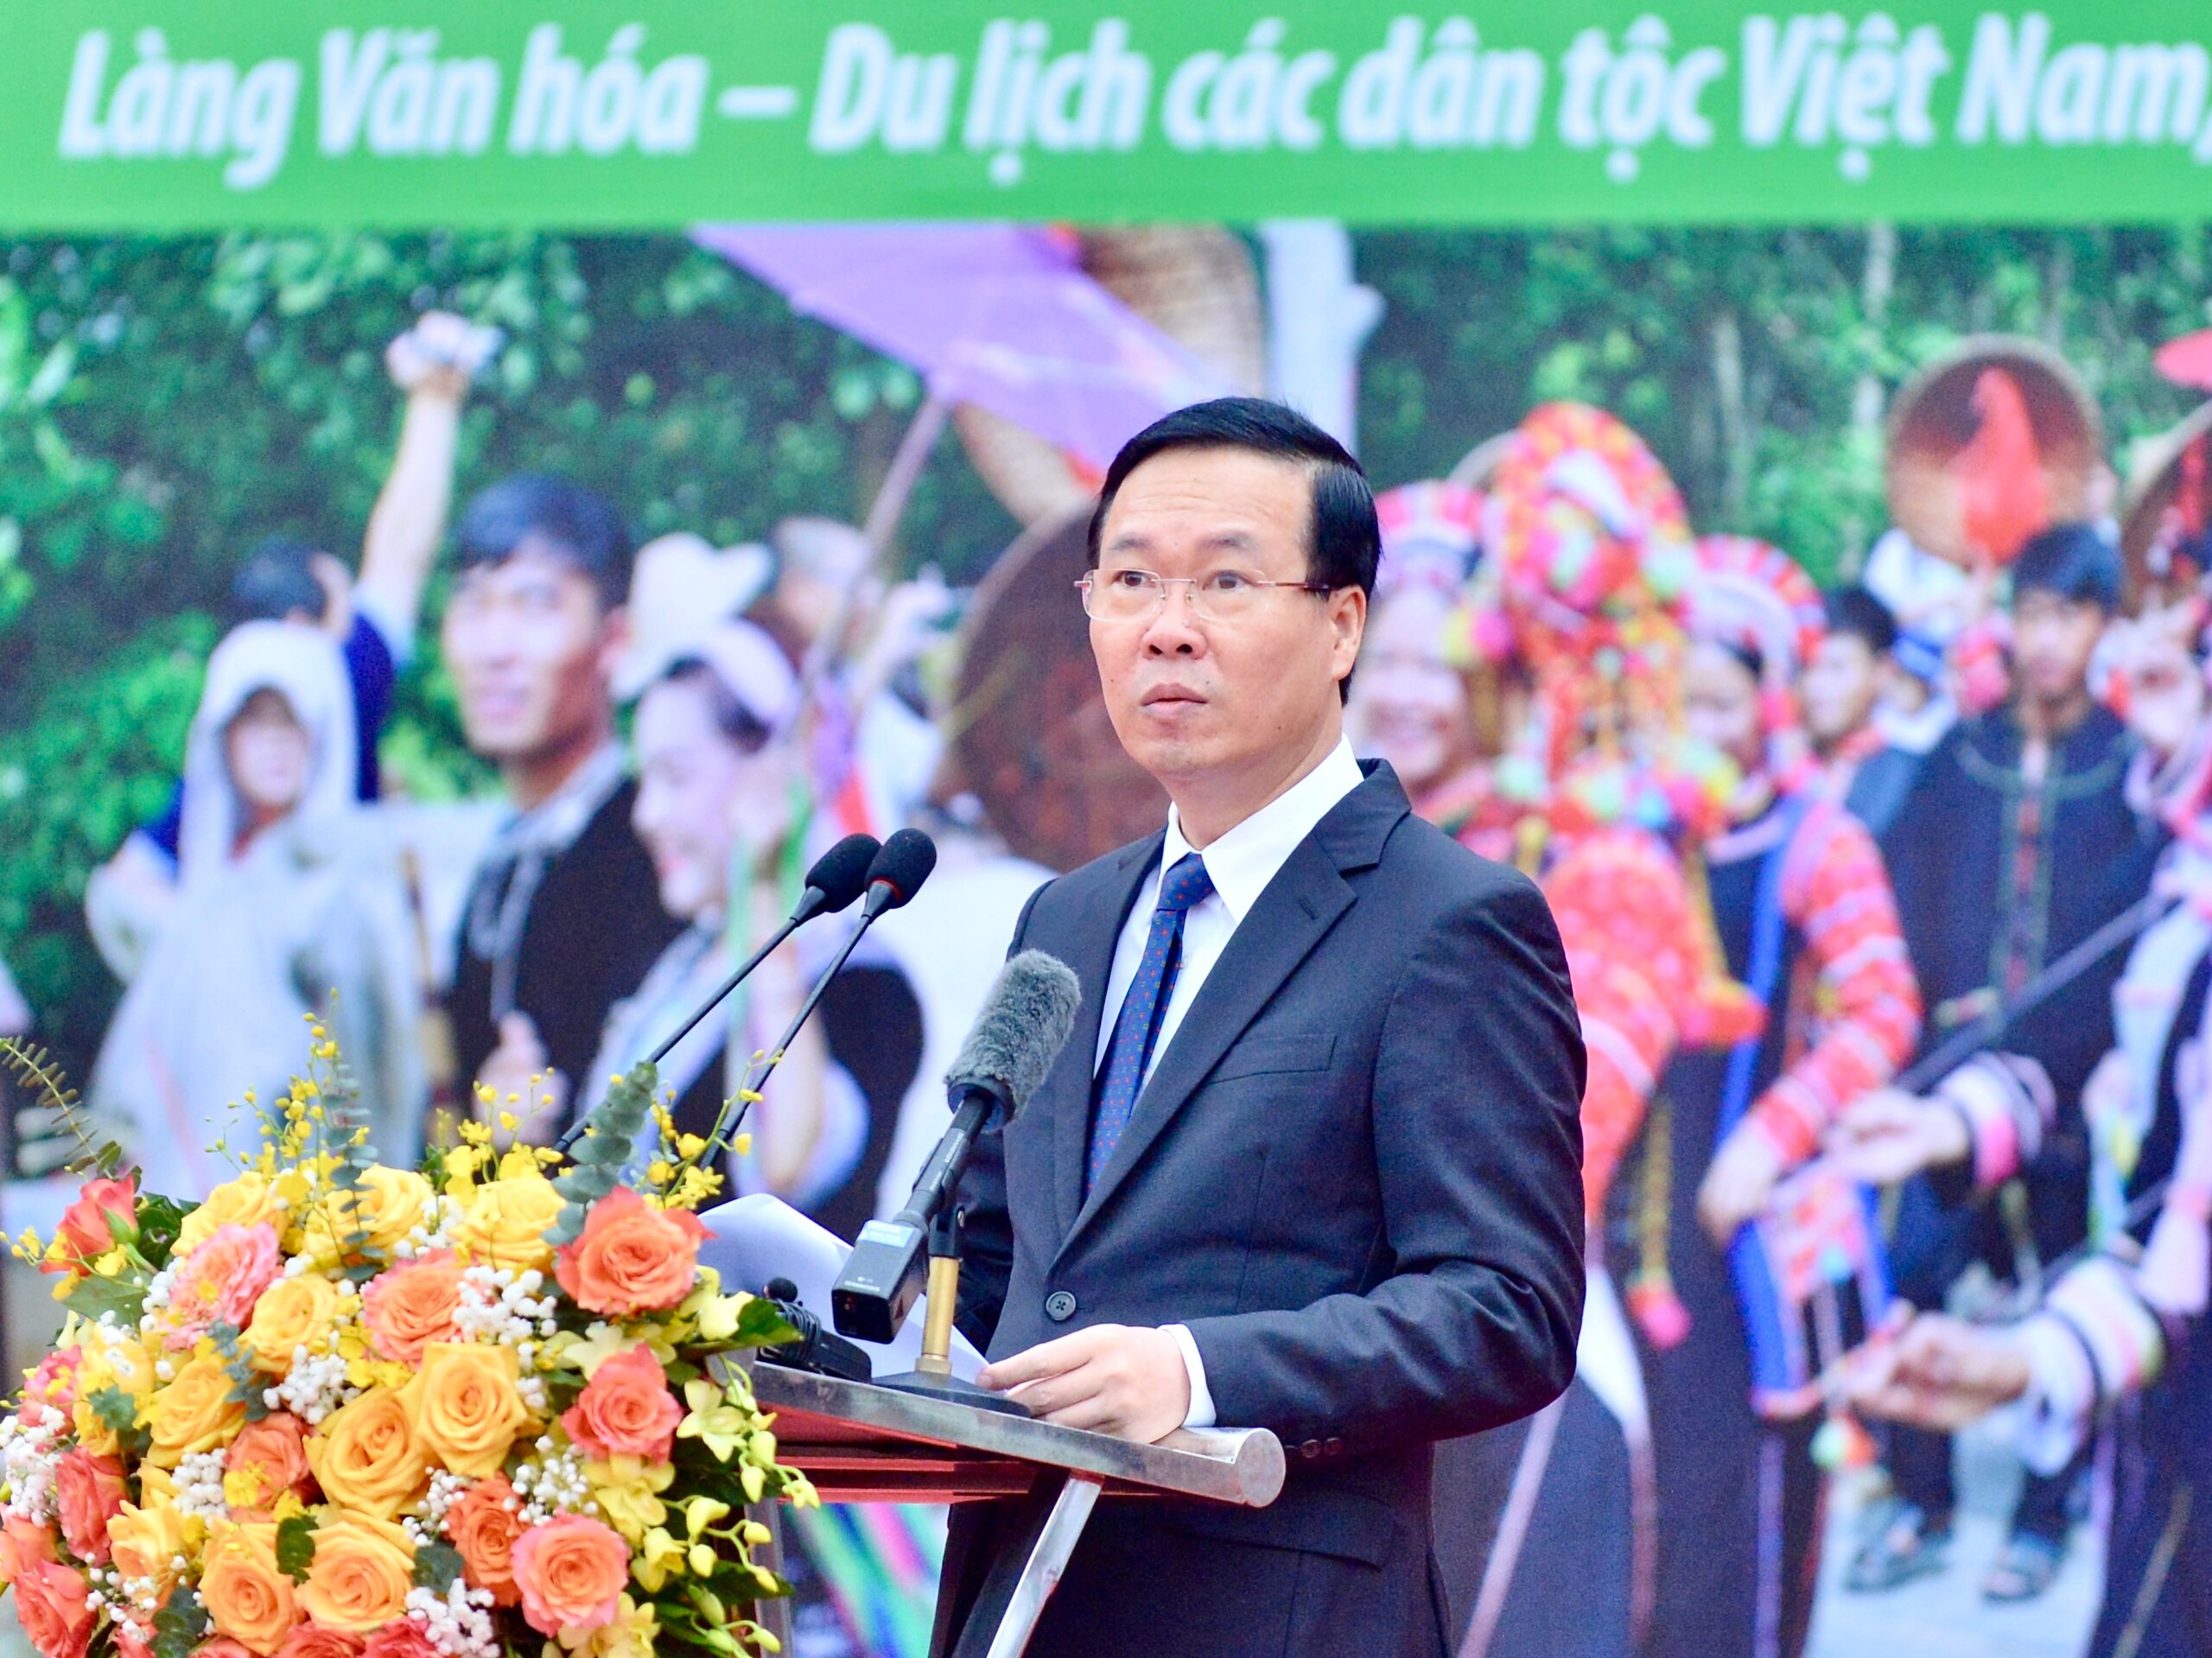 Chủ tịch nước Võ Văn Thưởng dự hội trỉa lúa, múa xòe cùng đồng bào dân tộc- Ảnh 2.